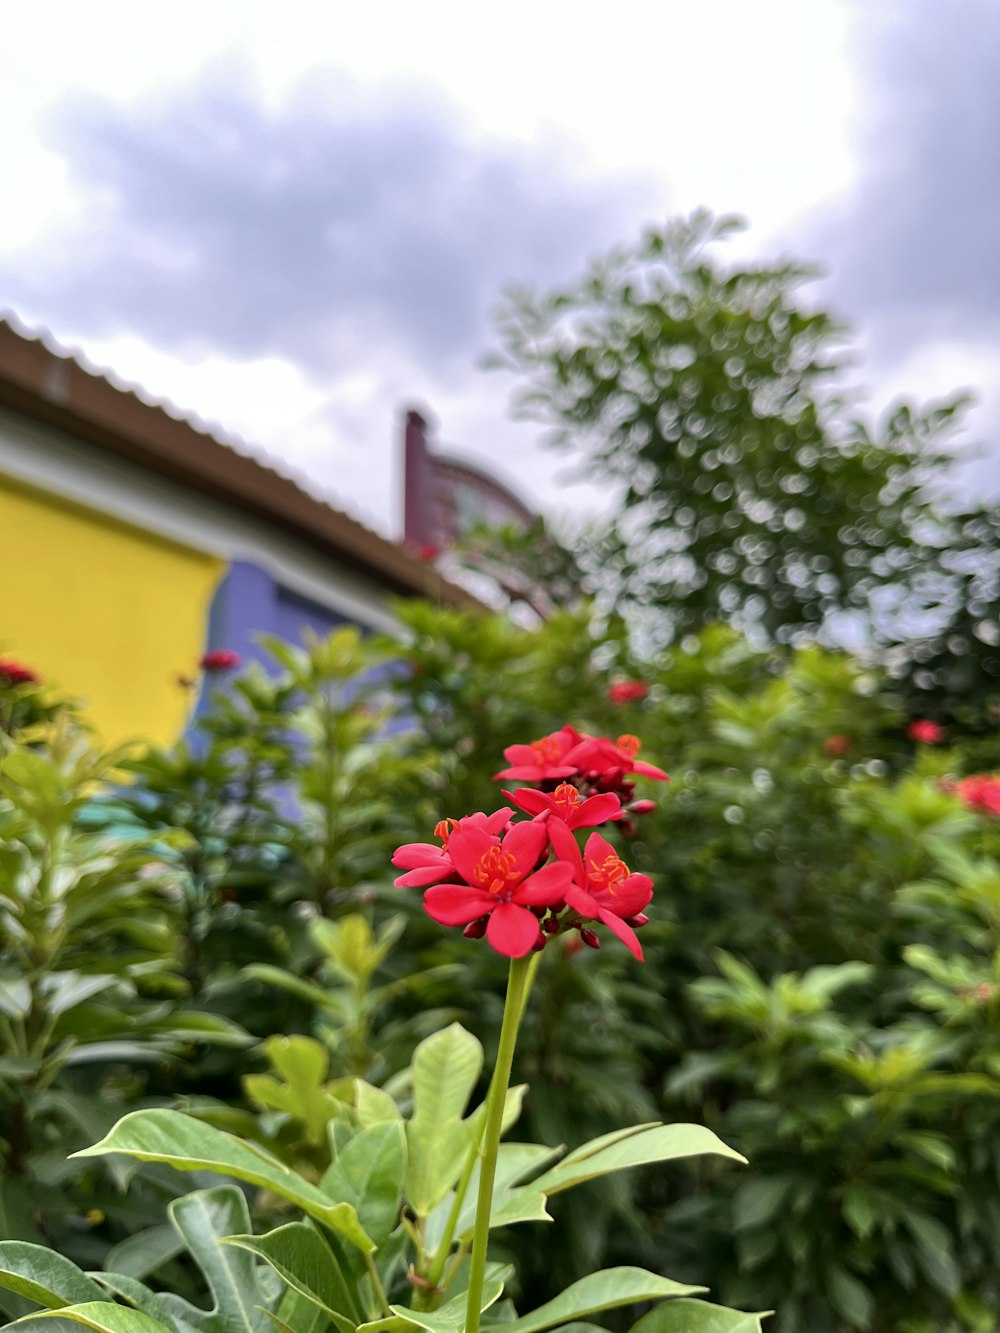 eine rote Blume vor einem gelben Gebäude